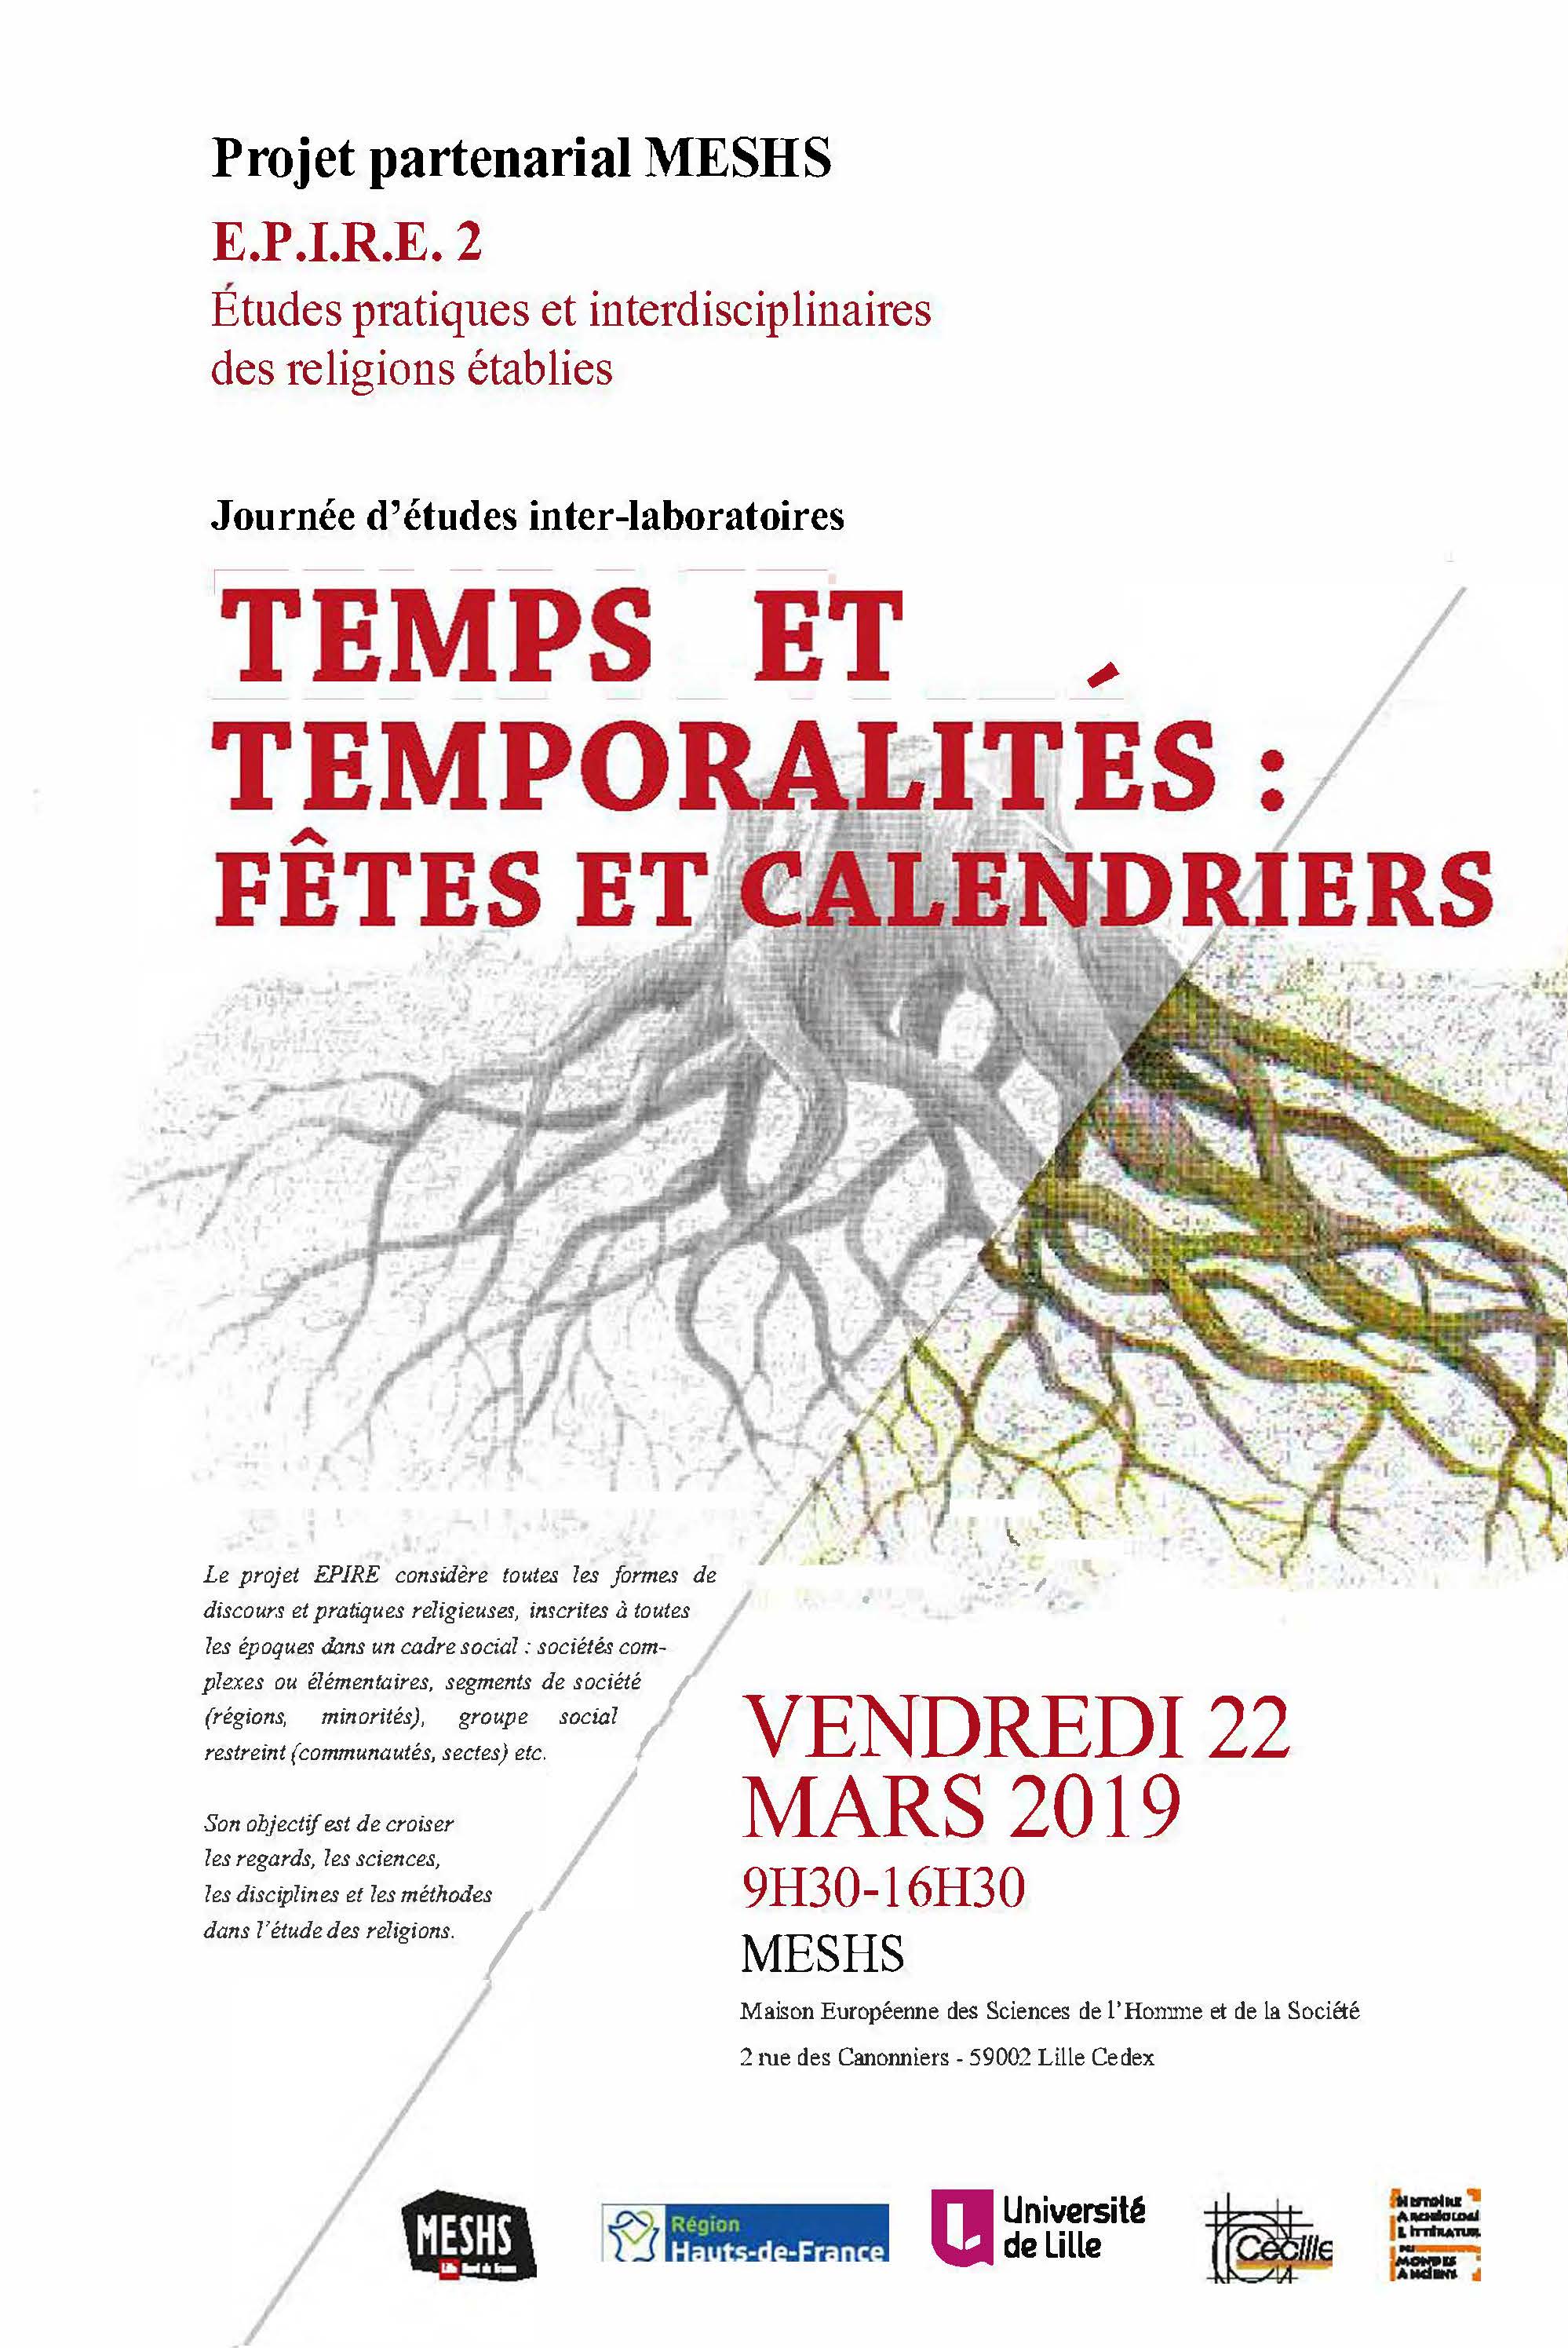 Affiche JE Epire Temps et temporalites 22 mars 2019